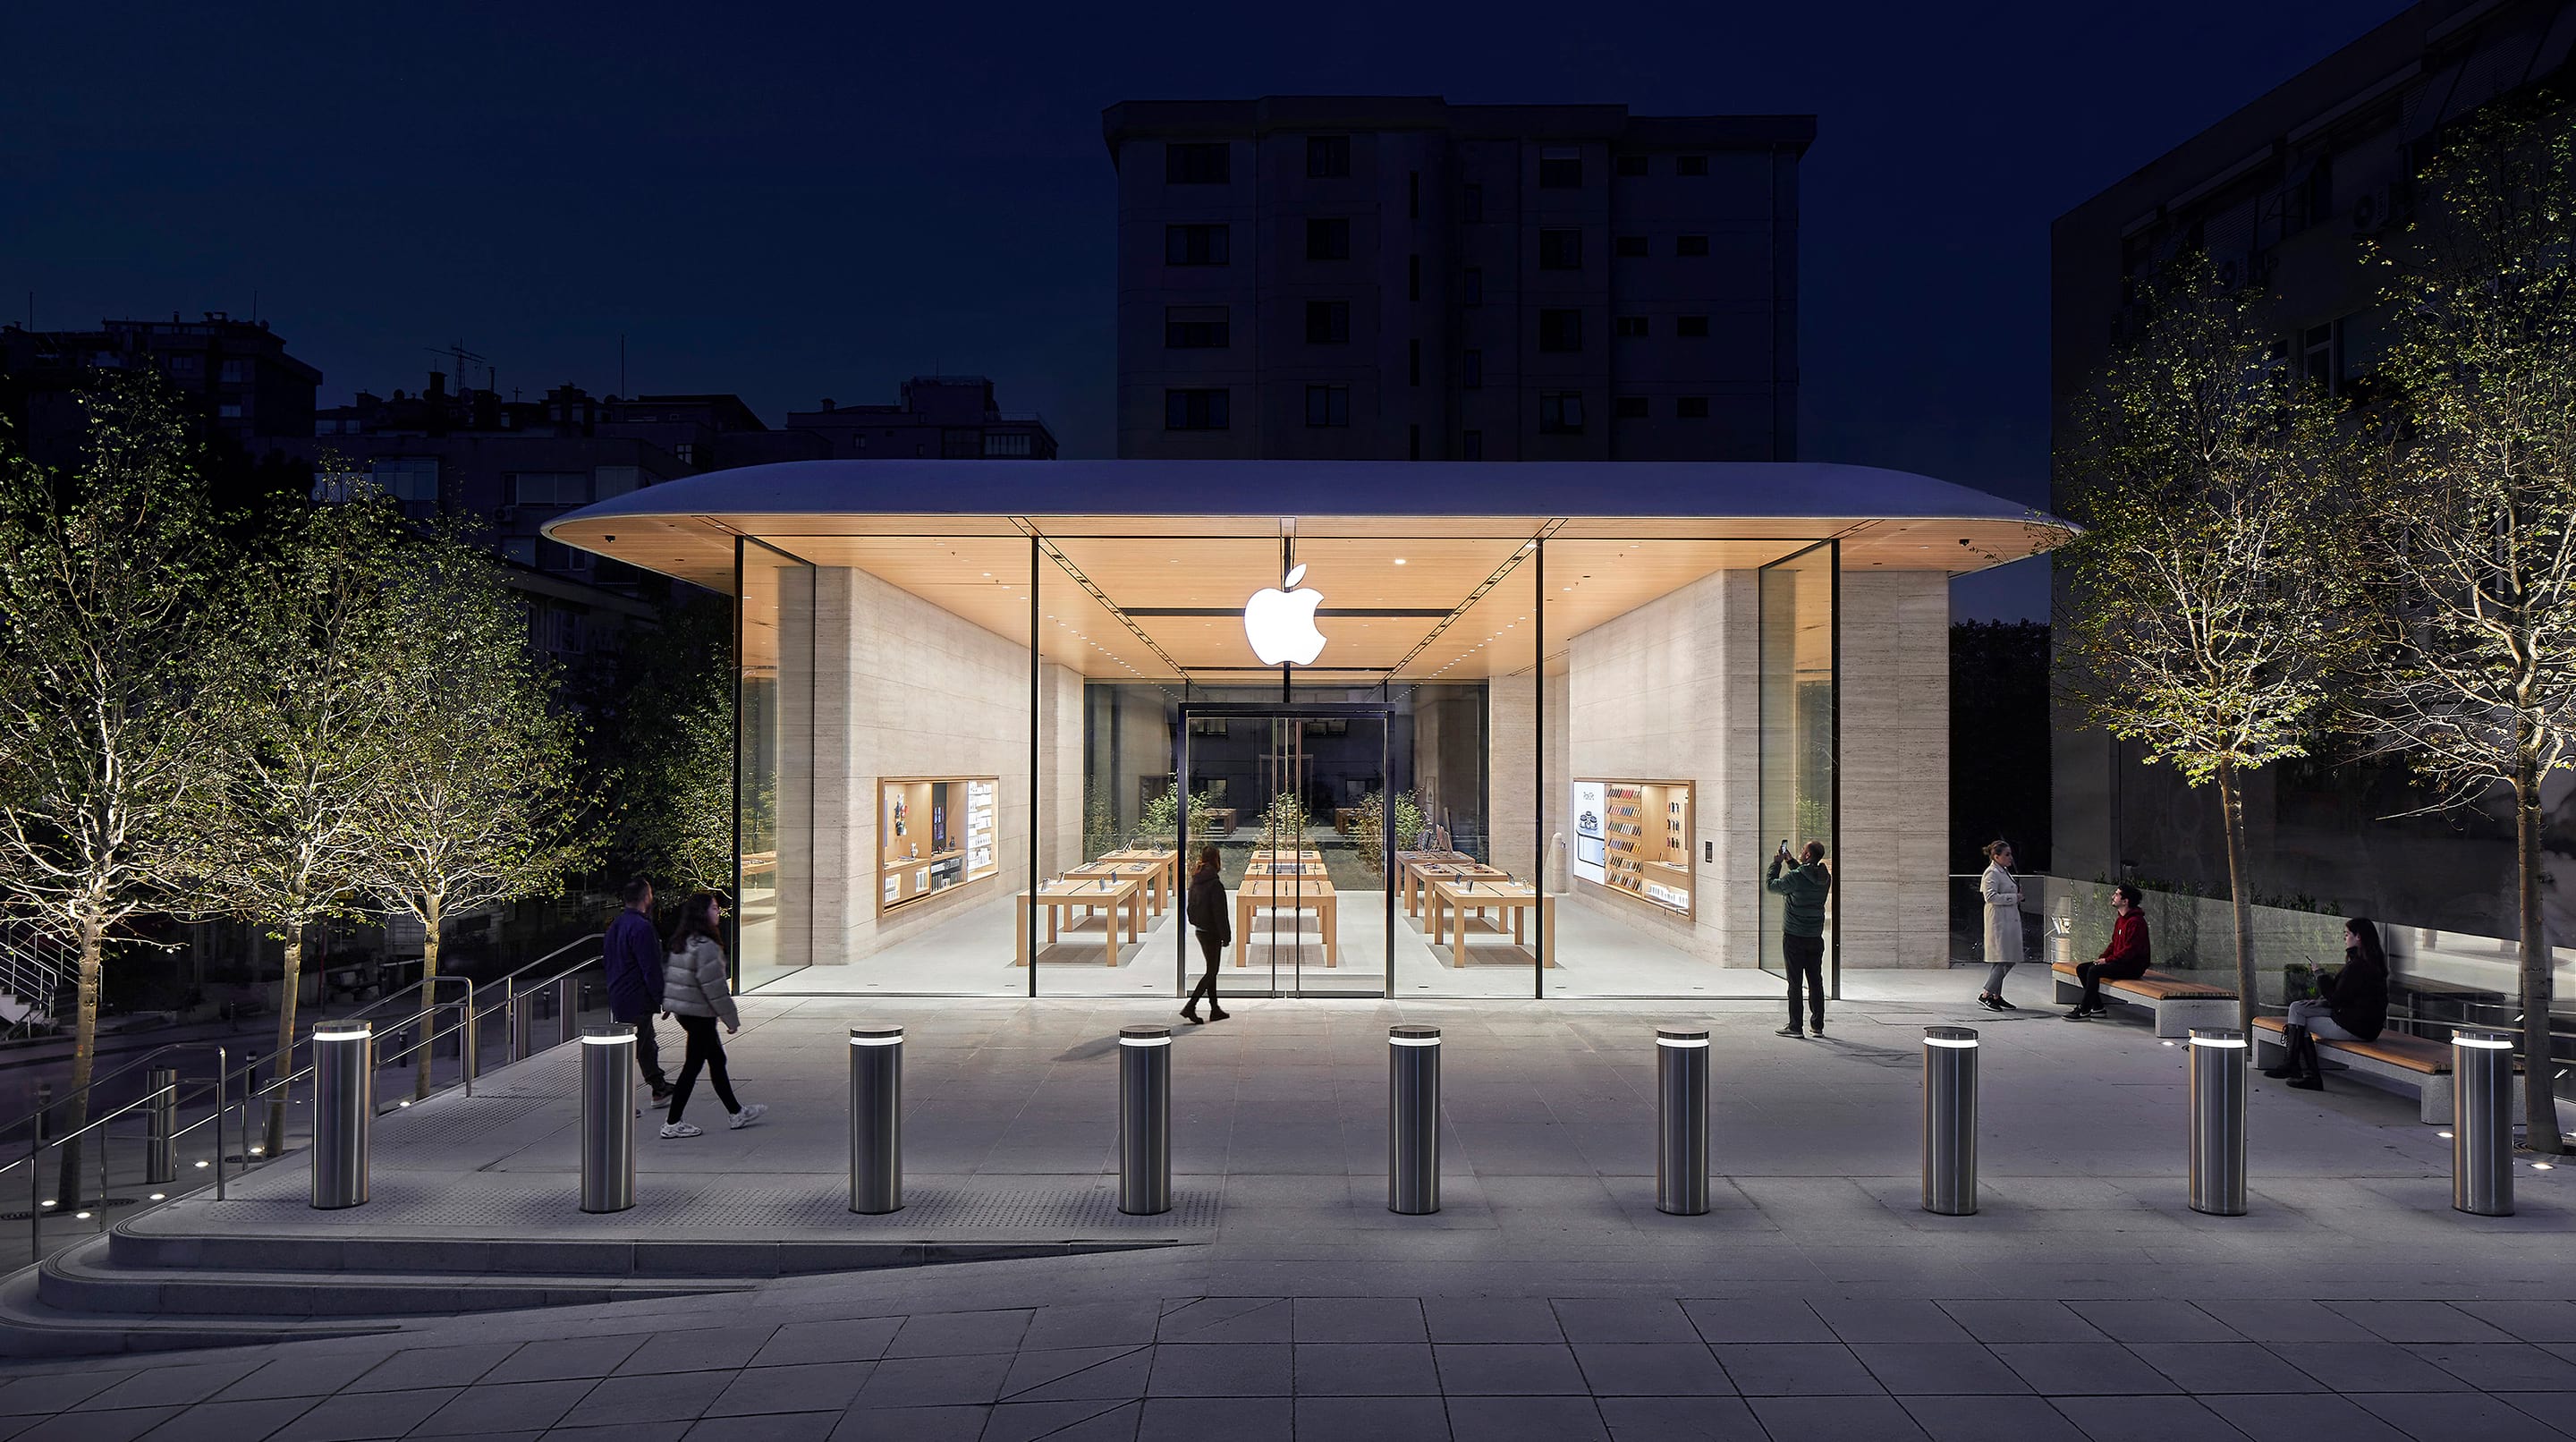 Son olarak Apple geldi: Caddeye ilgili artıyor, doluluk yüzde 98'e ulaştı